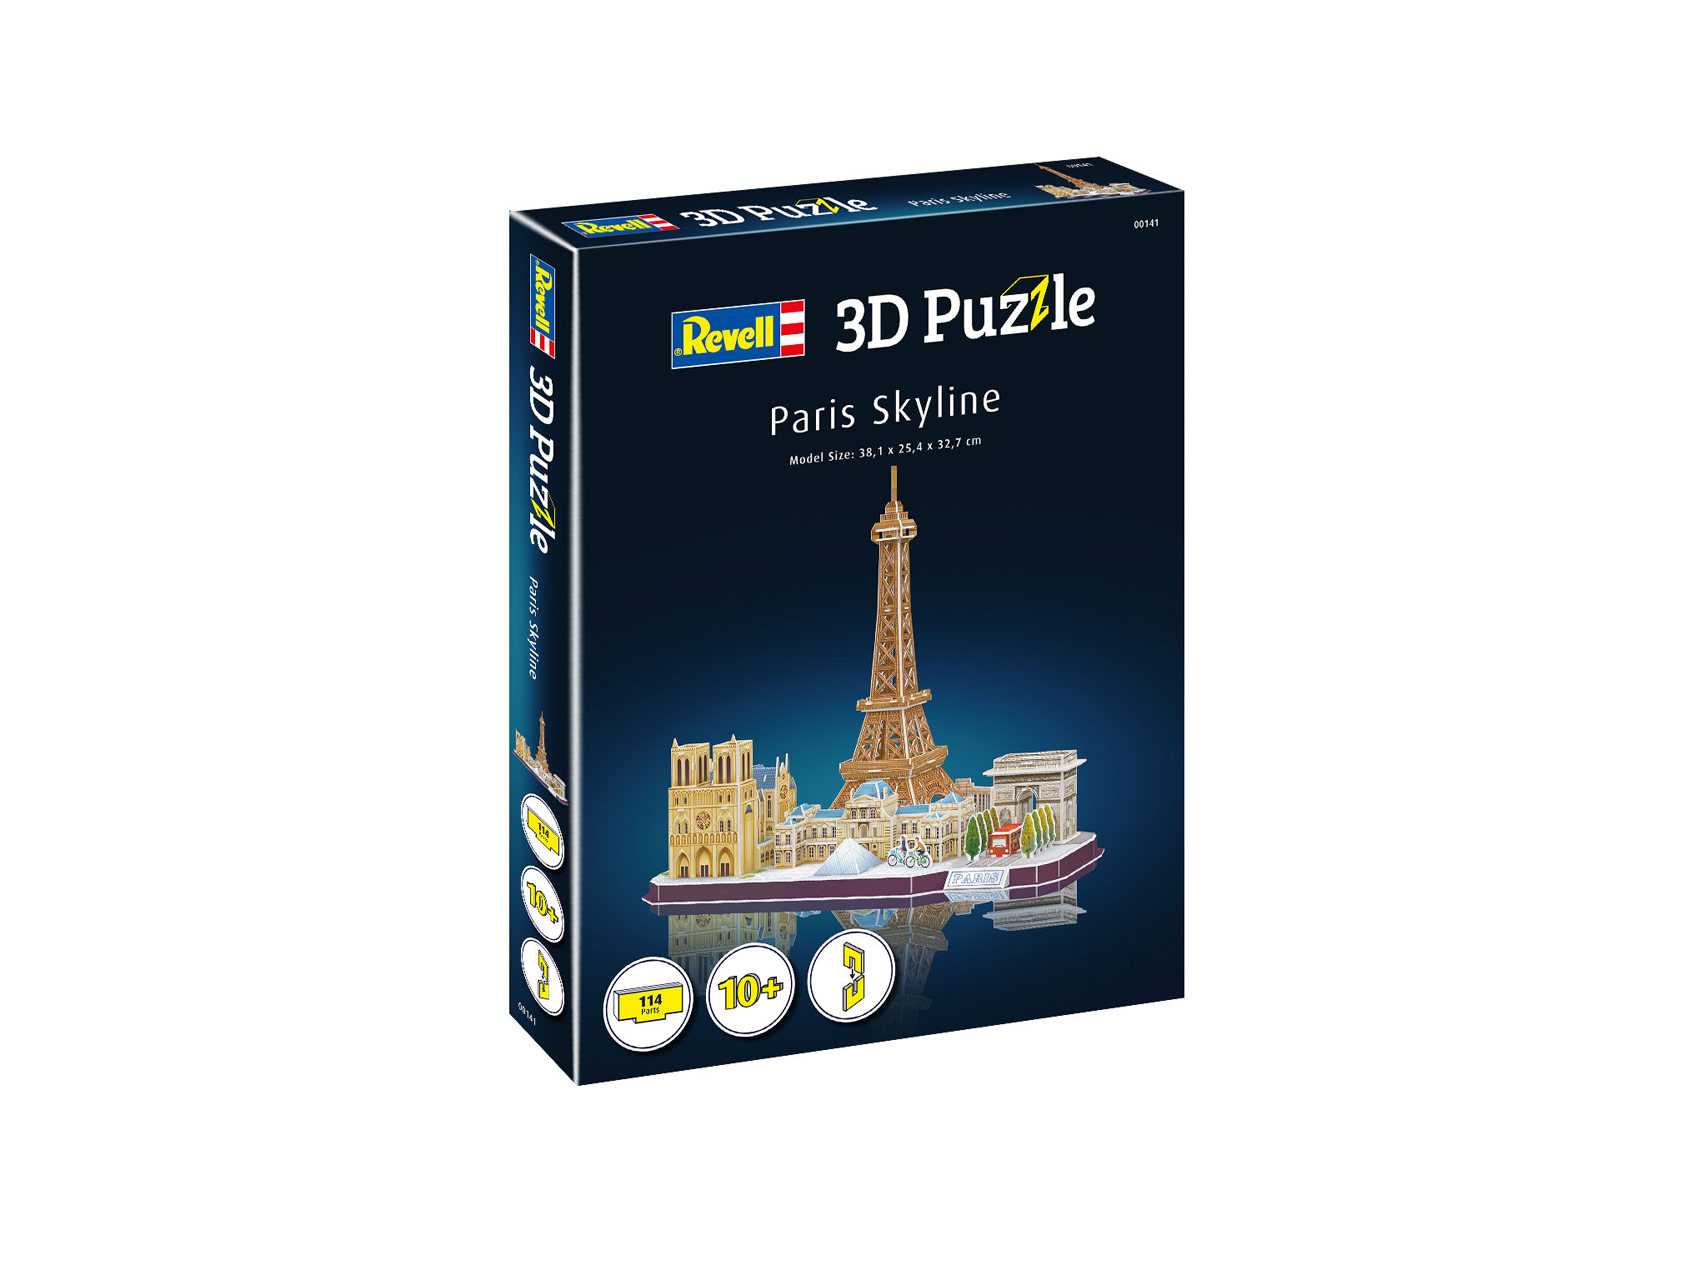 3D PuzzleRevell 00141 - Paris Skyline